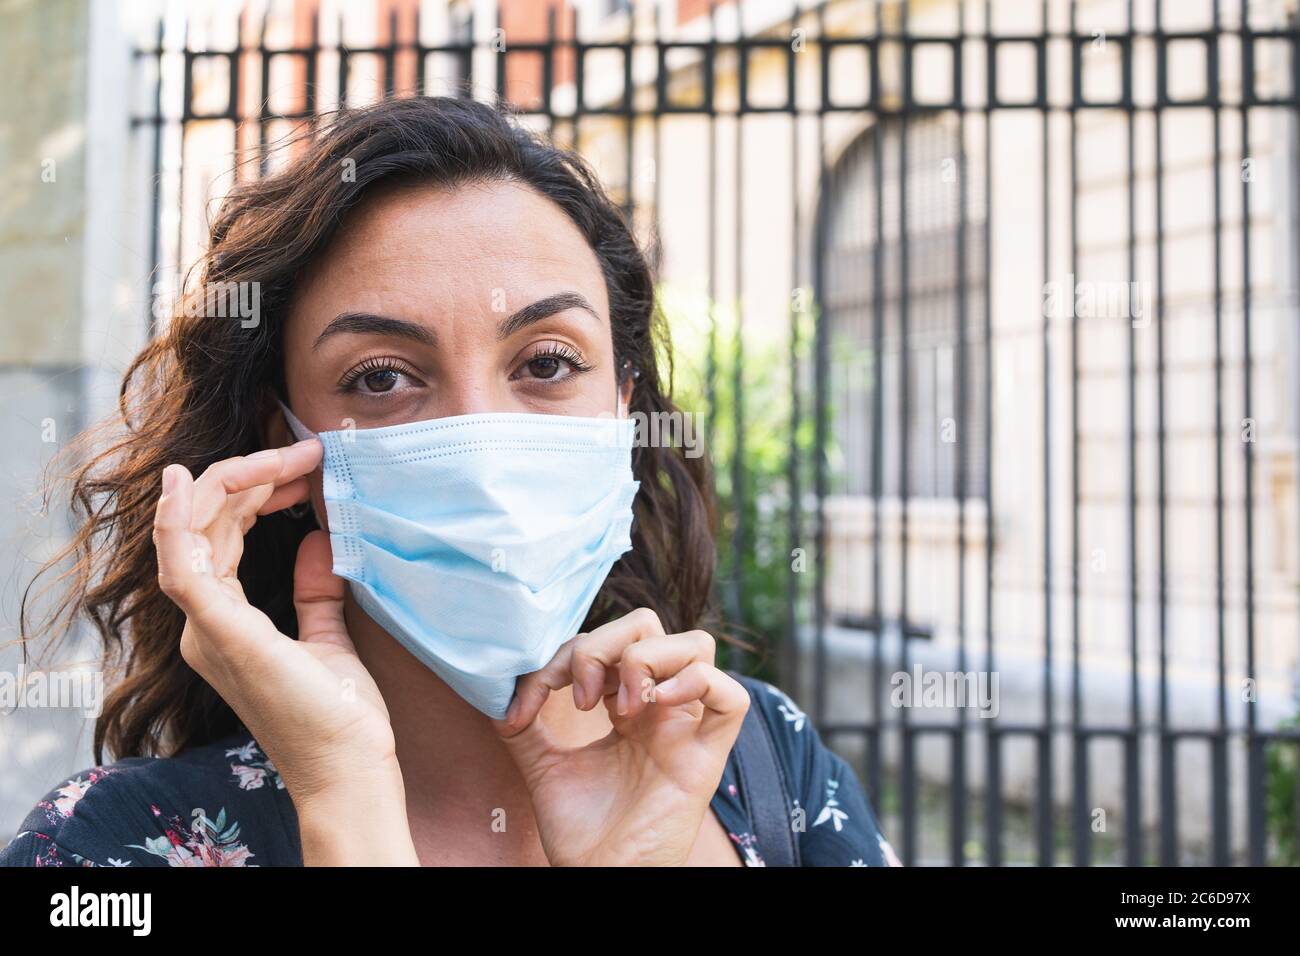 Jeune femme mettant un masque chirurgical dans la rue pour se protéger et prendre des mesures de sécurité hygiéniques. Concept de protection et de sécurité Banque D'Images